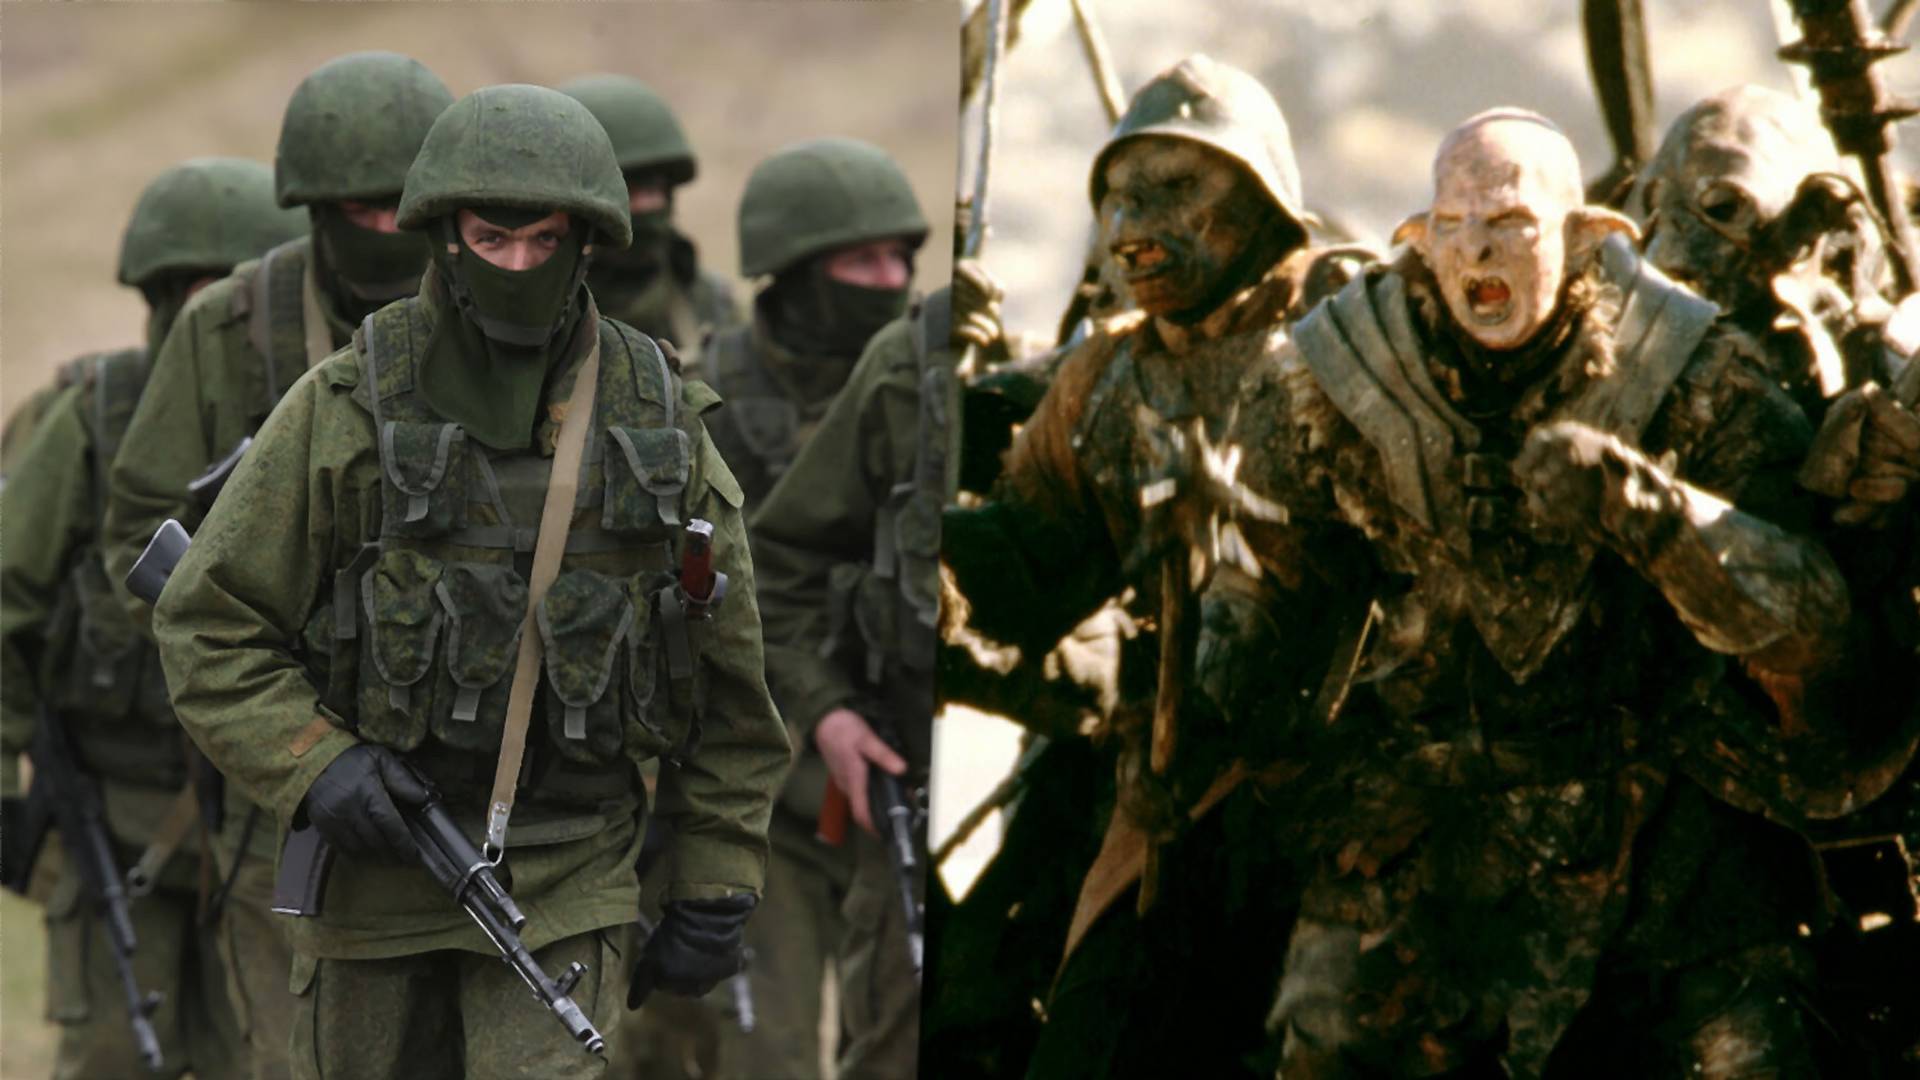 Dlaczego Ukraińcy nazywają rosyjskich żołnierzy "orkami?". Podwójne znaczenie